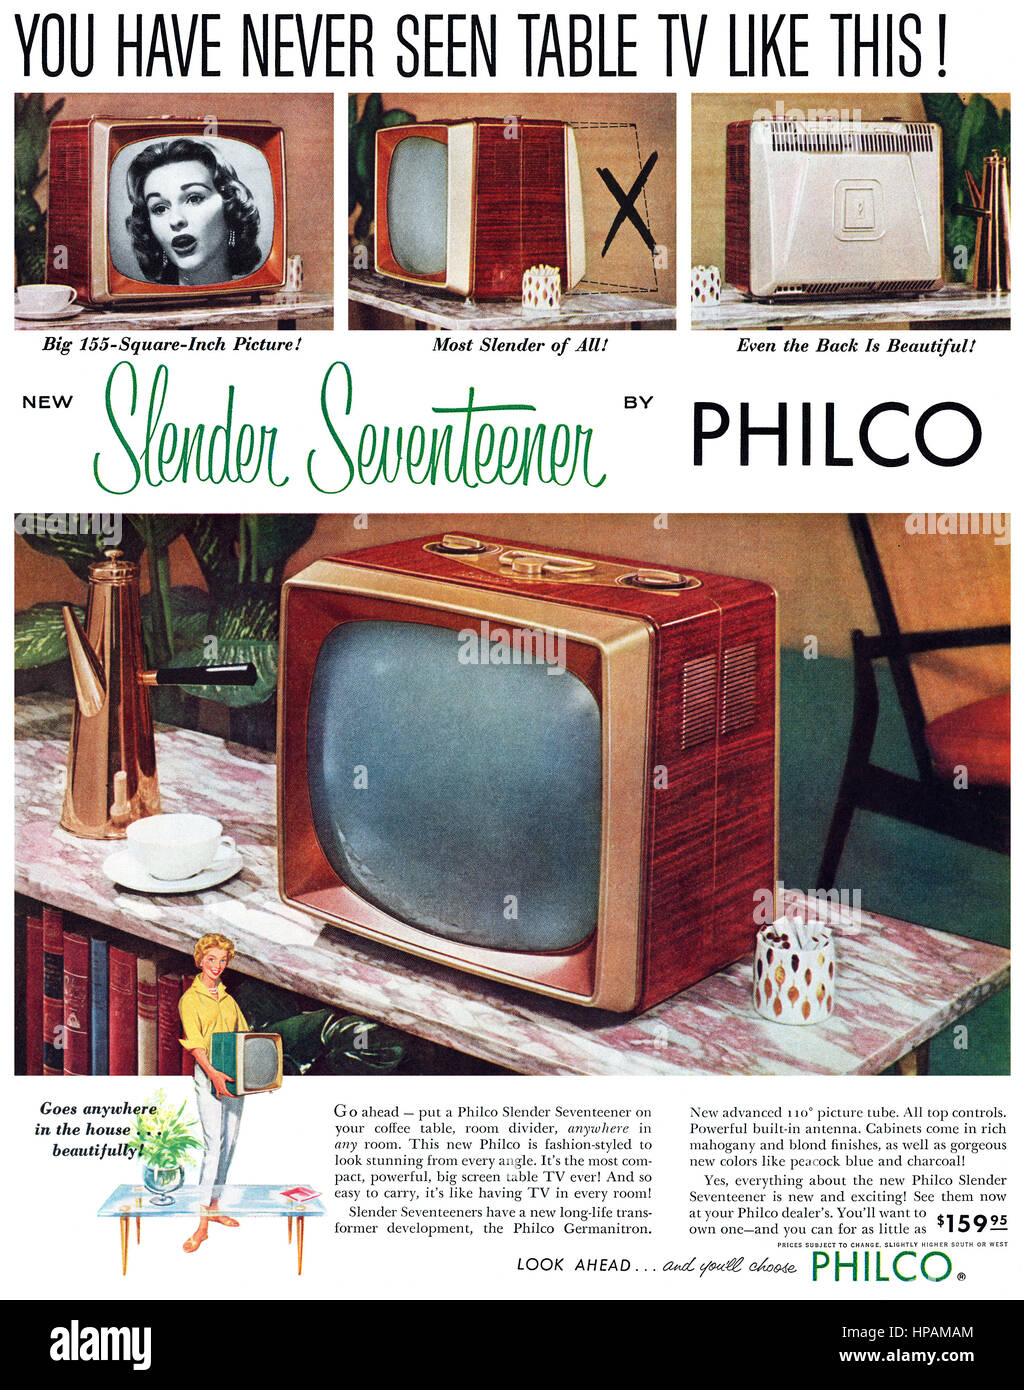 1957 EE.UU. anuncio de la Philco esbelta Seventeener televisión portátil. Foto de stock